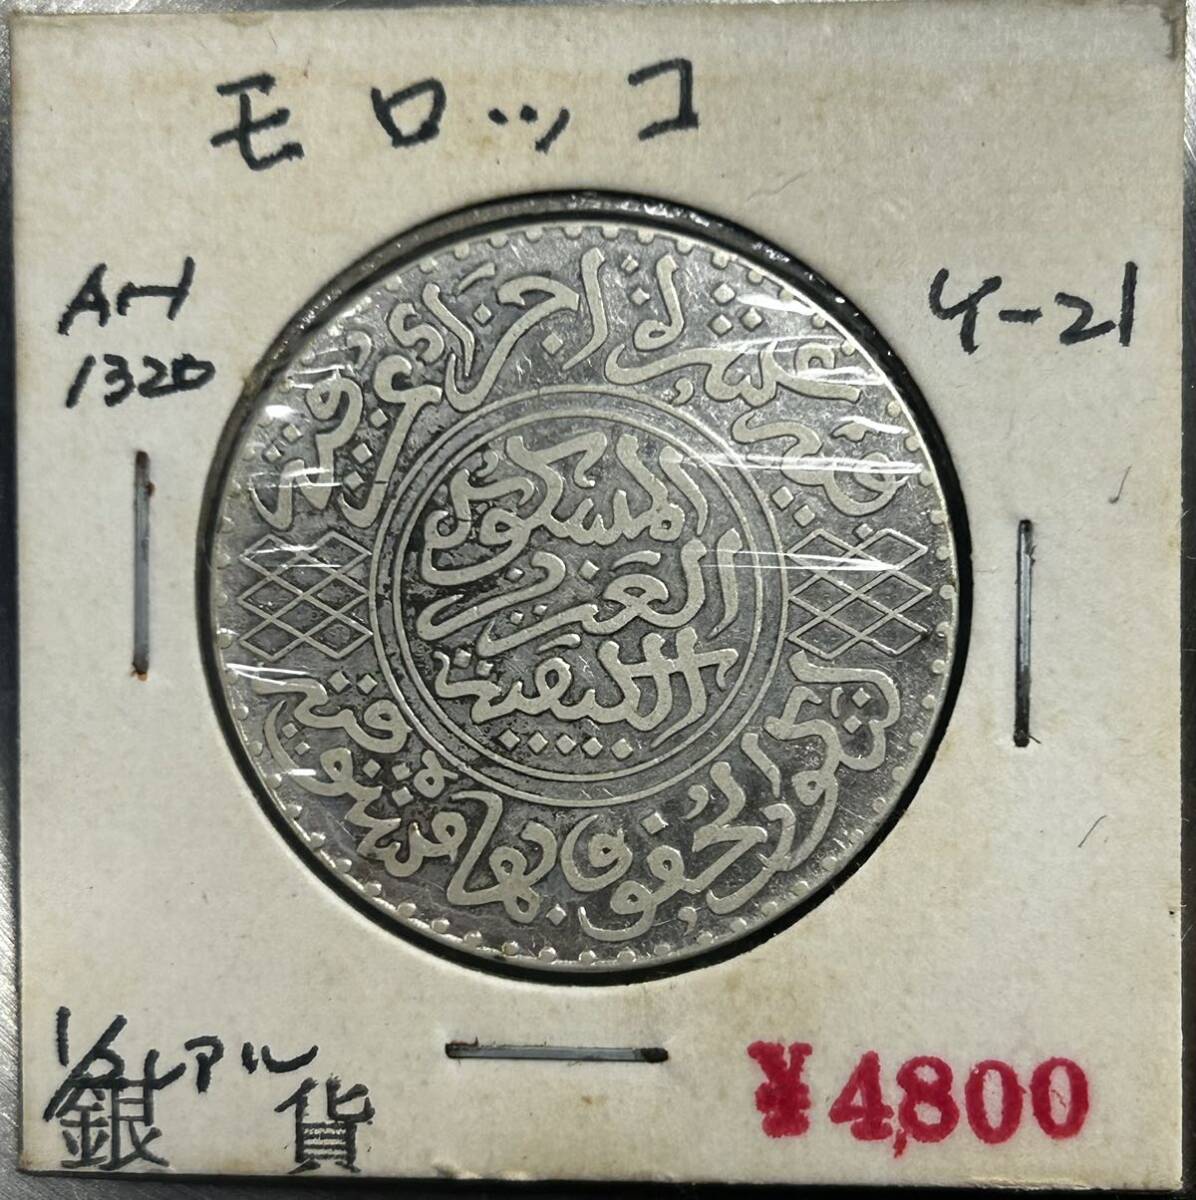 『希少』モロッコ 5ディルハム銀貨 1902年発行 XF 古銭 銀貨の画像1